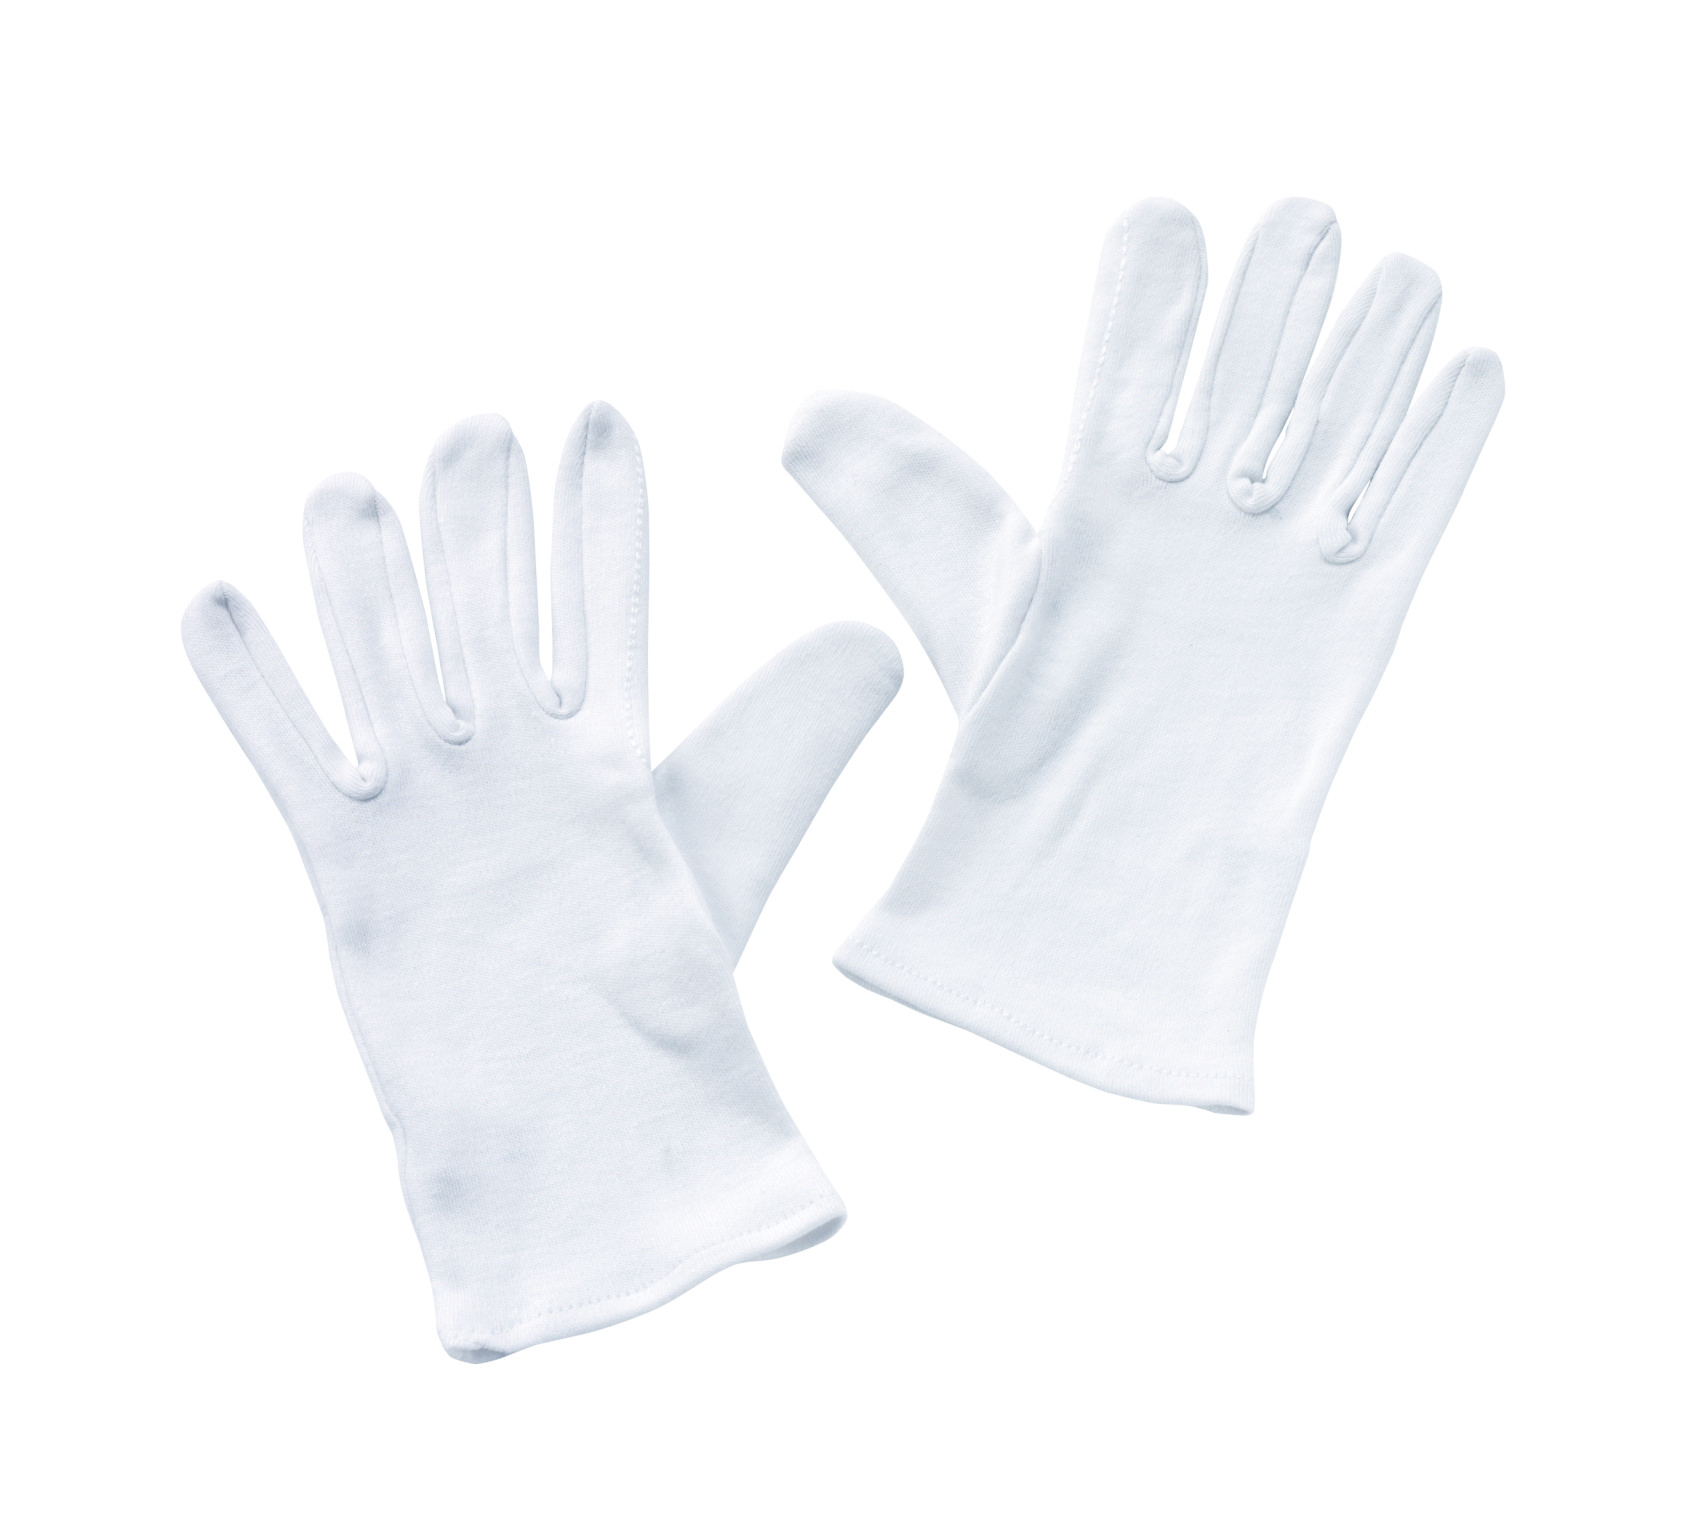 Handschuhe oder Servierhandschuhe, Universalgröße, Farbe weiß